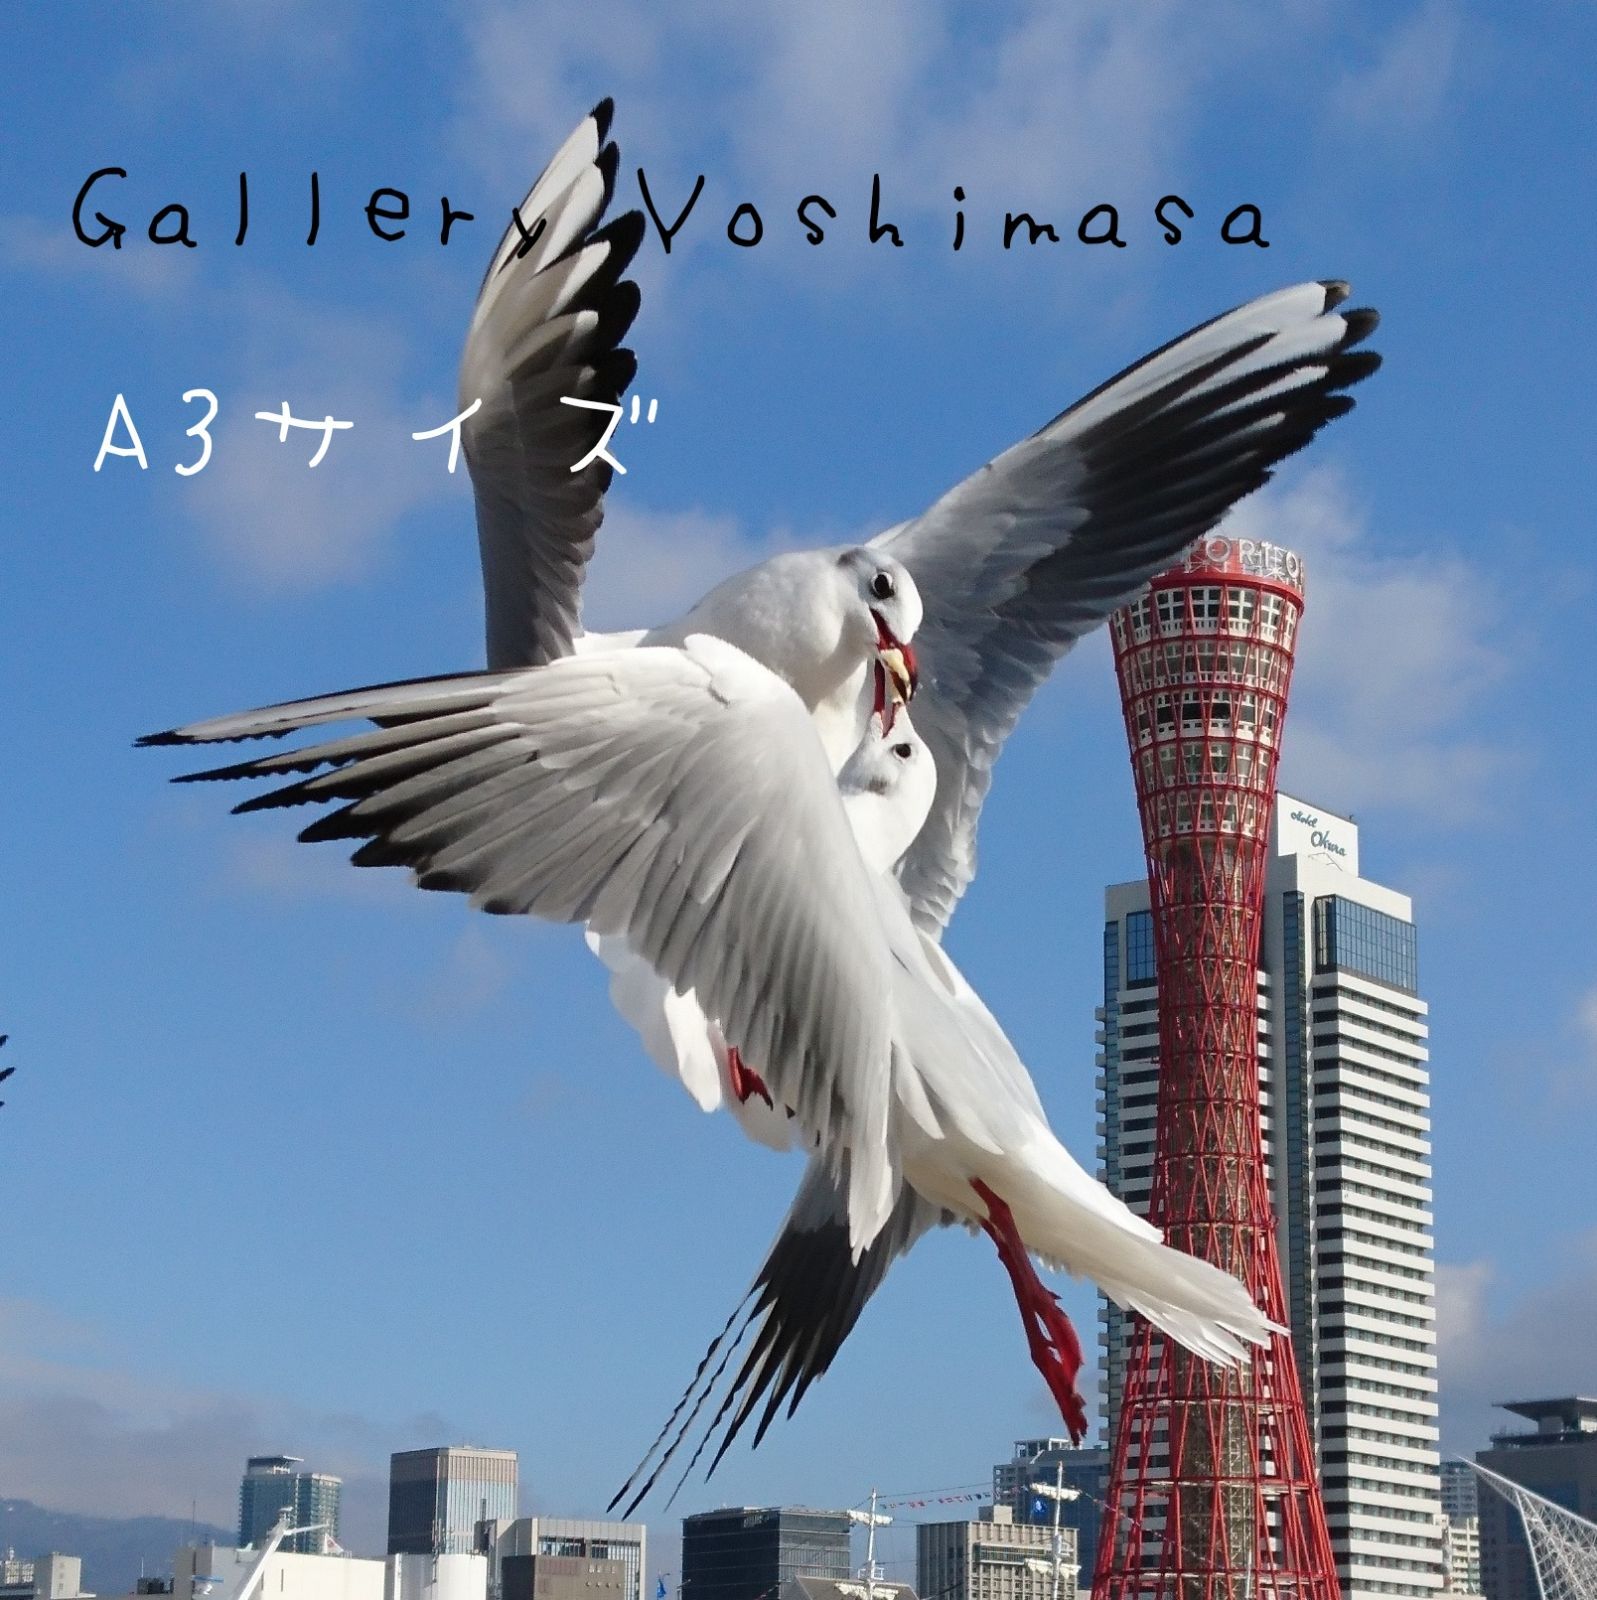 みなと神戸に咲く華 「ユリカモメ」 A3 サイズ光沢写真縦 写真のみ ...